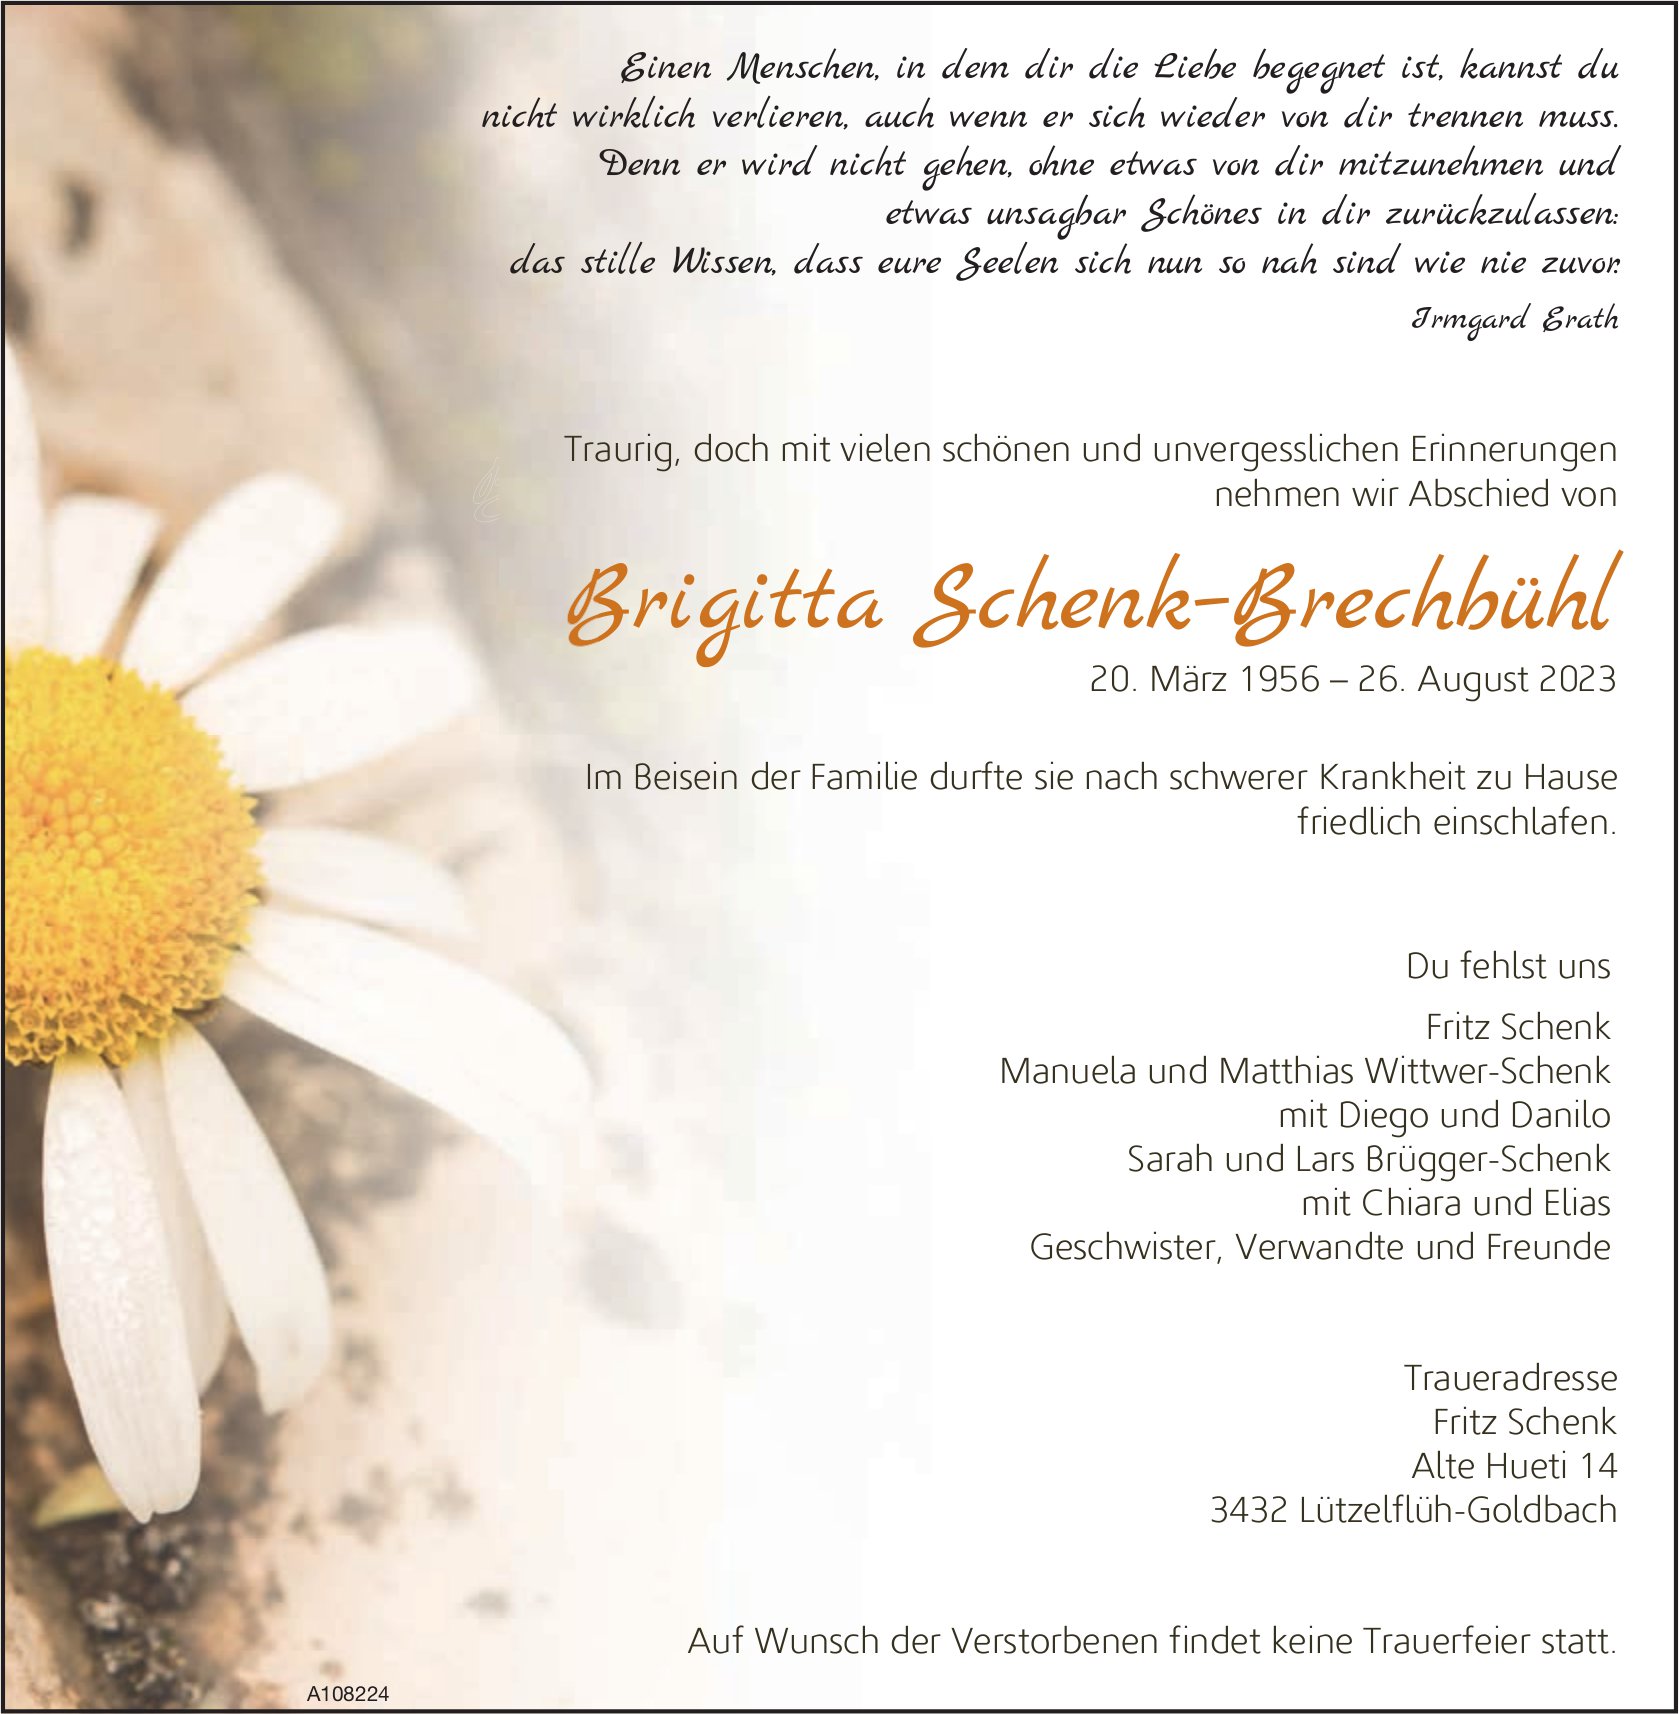 Brigitta Schenk–Brechbühl, August 2023 / TA